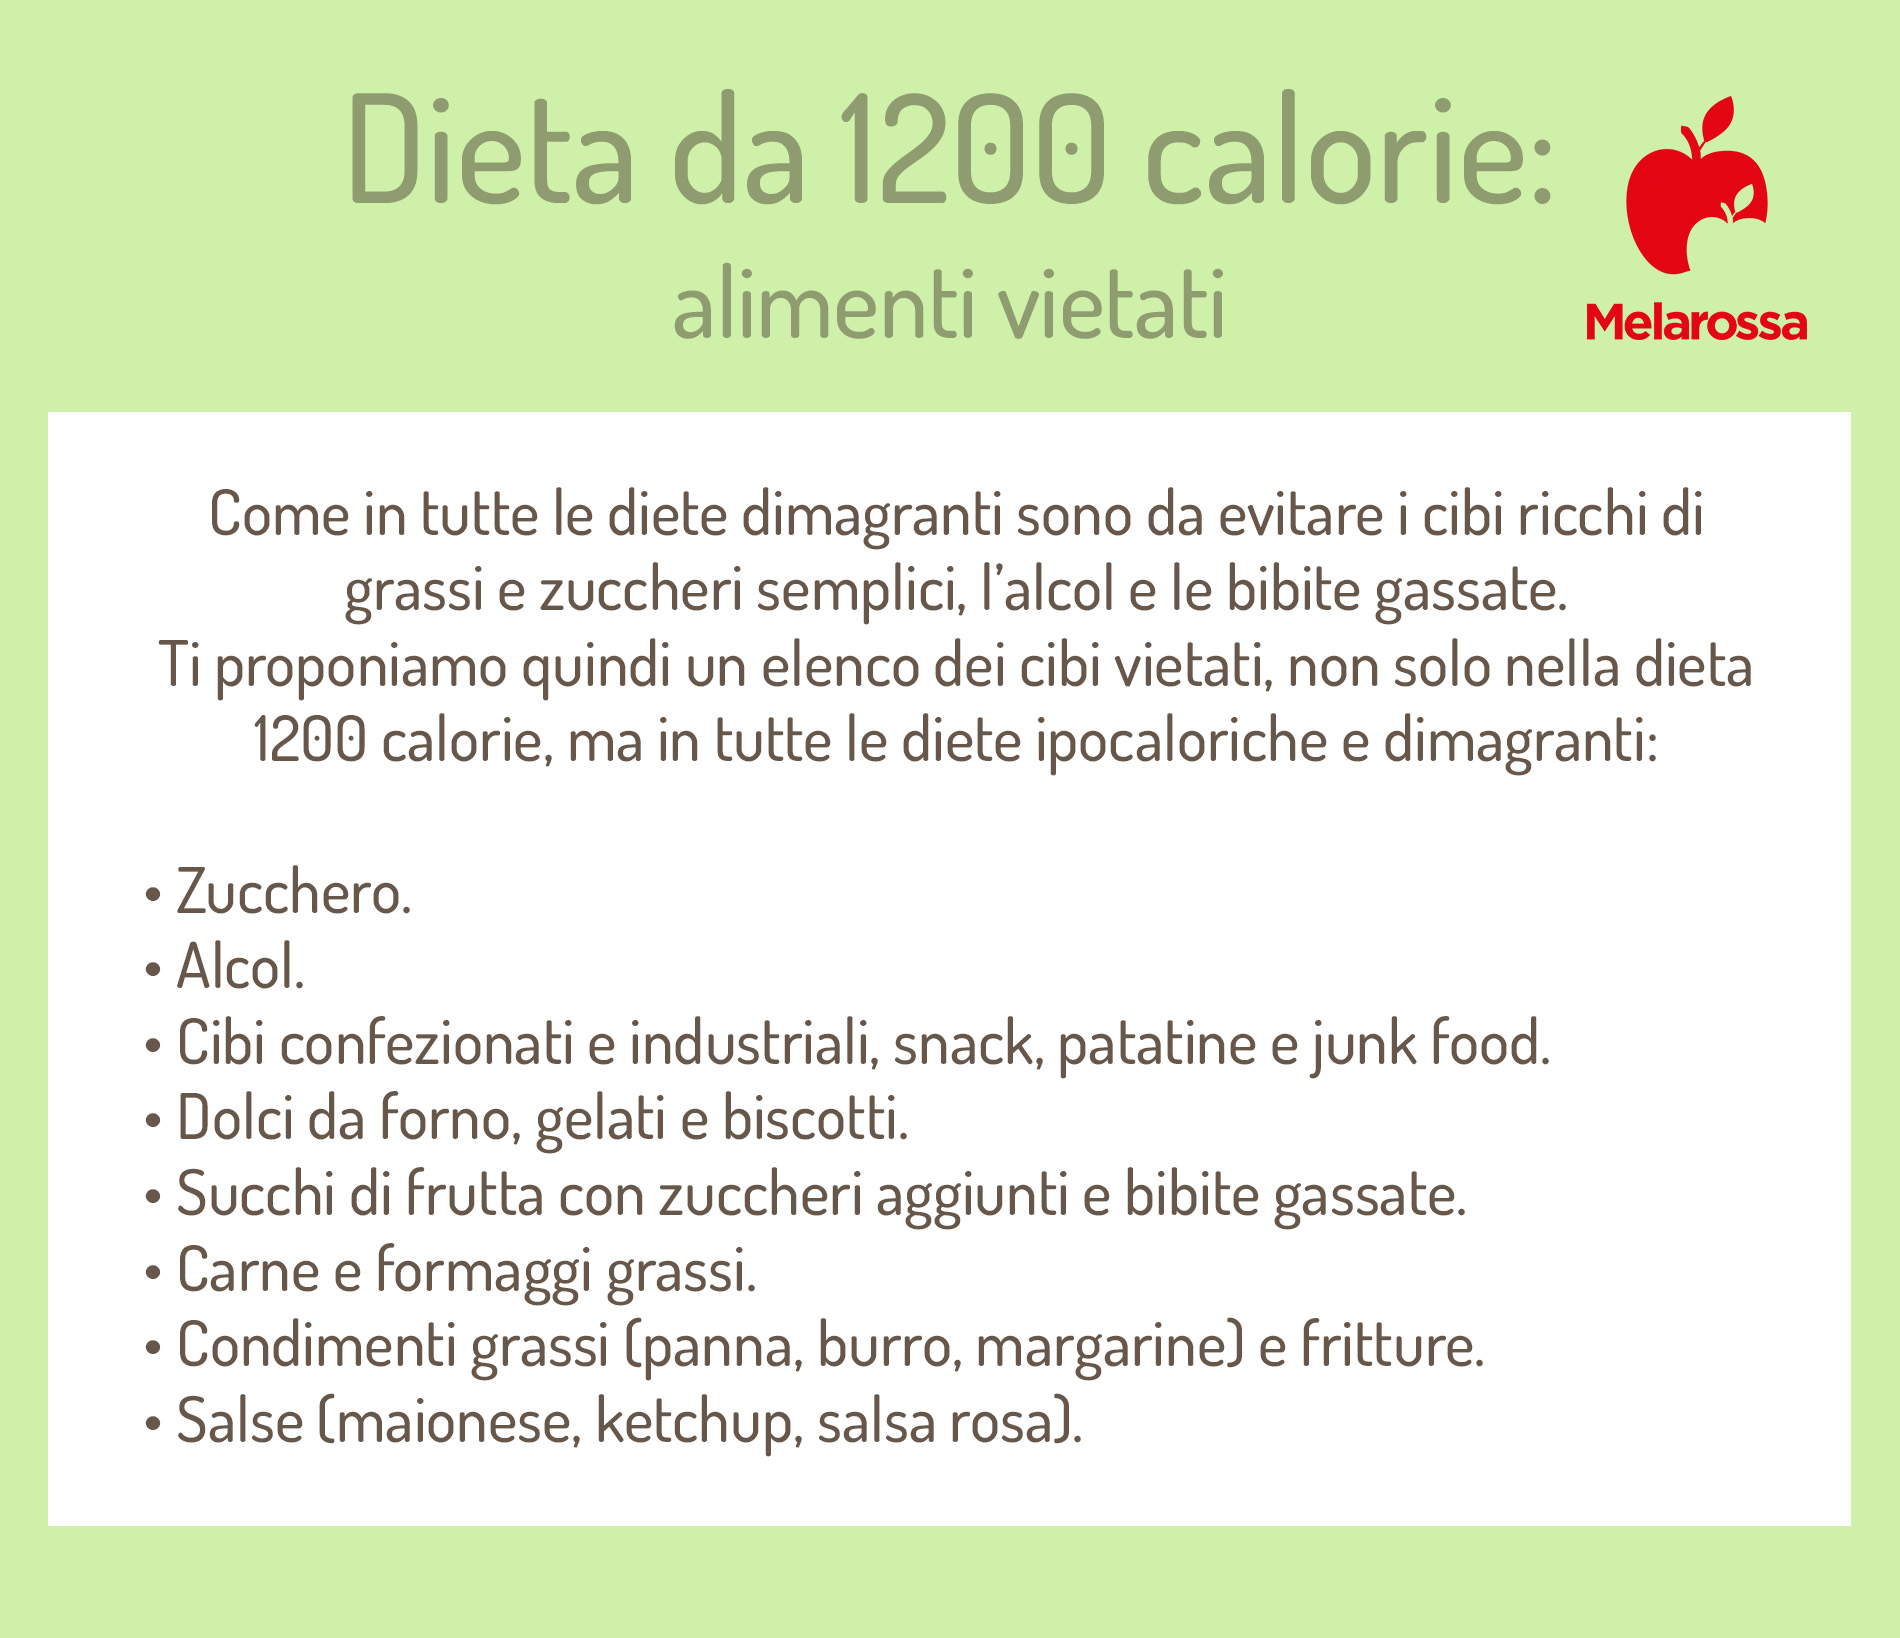 dieta da 1200 calorie: alimenti vietati 